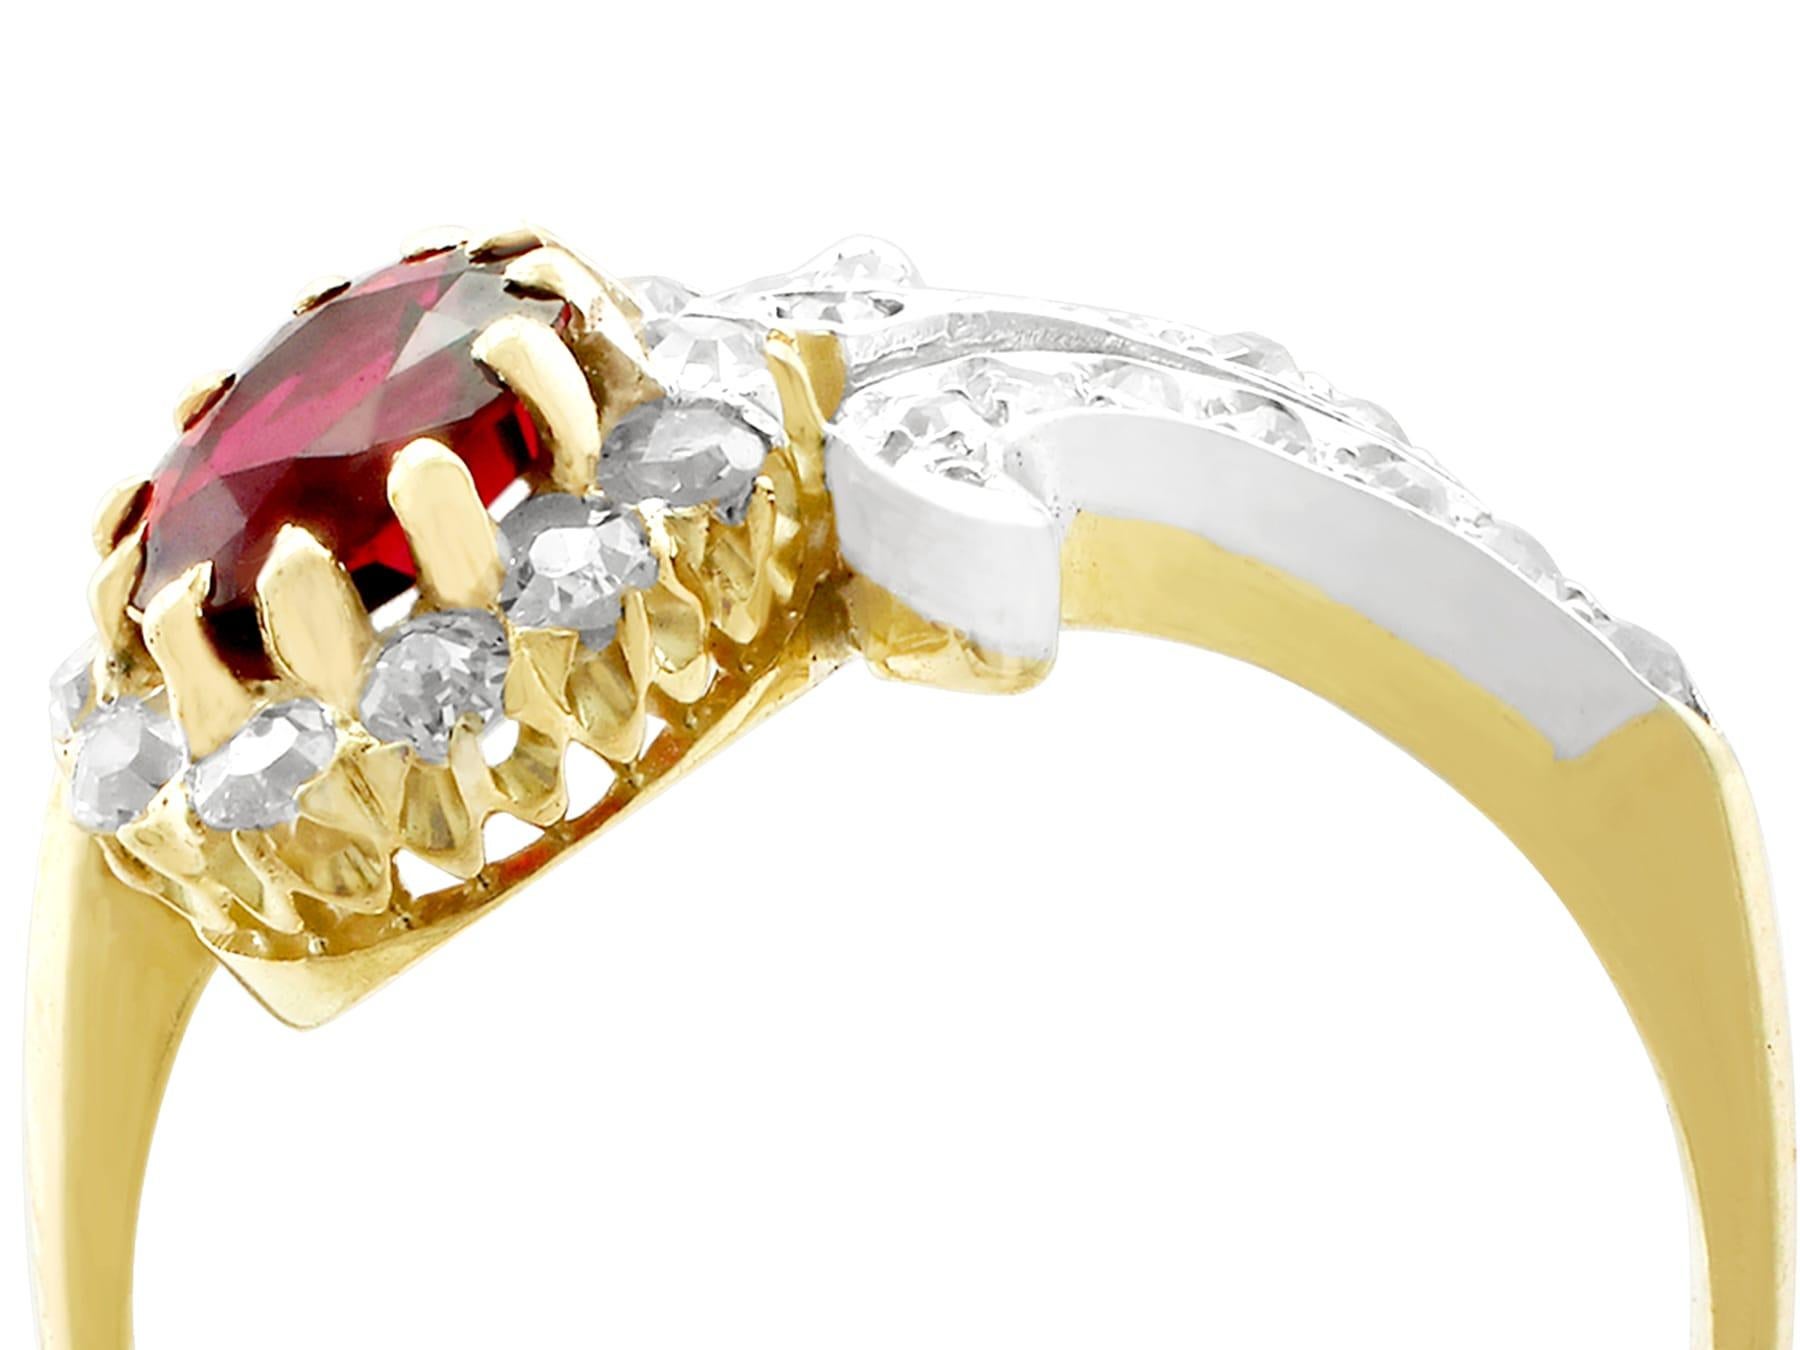 Ein beeindruckender antiker Ring aus 18 Karat Gelb- und Weißgold mit einem Rubin von 0,95 Karat und einem Diamanten von 0,83 Karat, der Teil unserer vielfältigen antiken Schmucksammlungen ist.

Dieser feine und beeindruckende antike Rubin- und